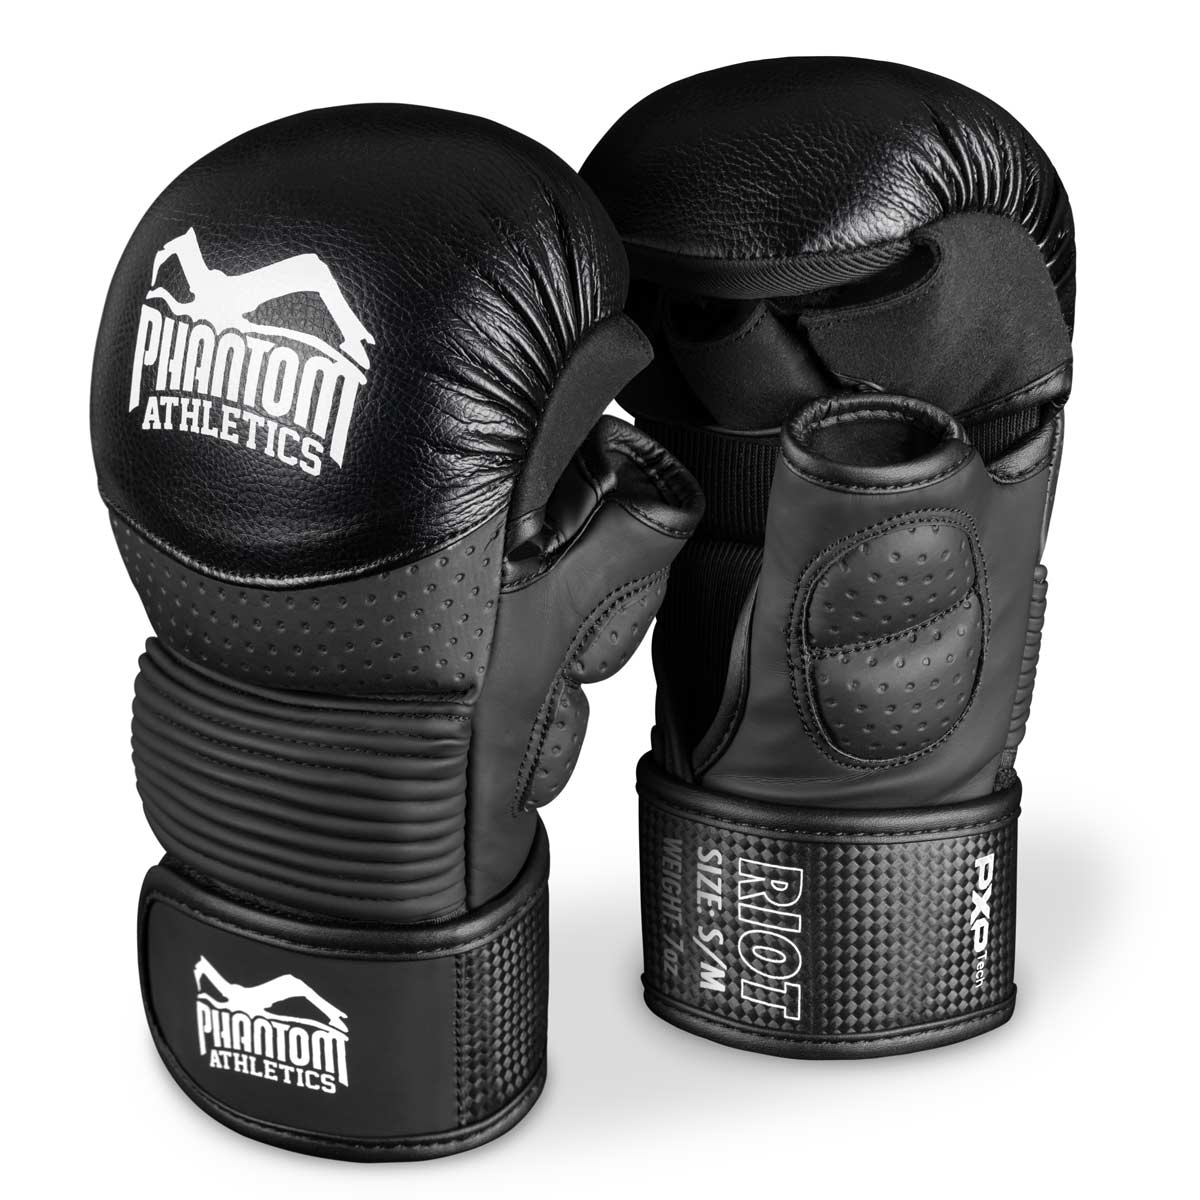 Die Phantom RIOT PRO MMA Sparringshandschuhe. Ideal für dein Kampfsport Training und Amateur Wettkämpfe. Die hochwertigsten und sichersten MMA Handschuhe auf dem Markt.  Perfekte Passform und überragende Qualität für Training und Sparring.